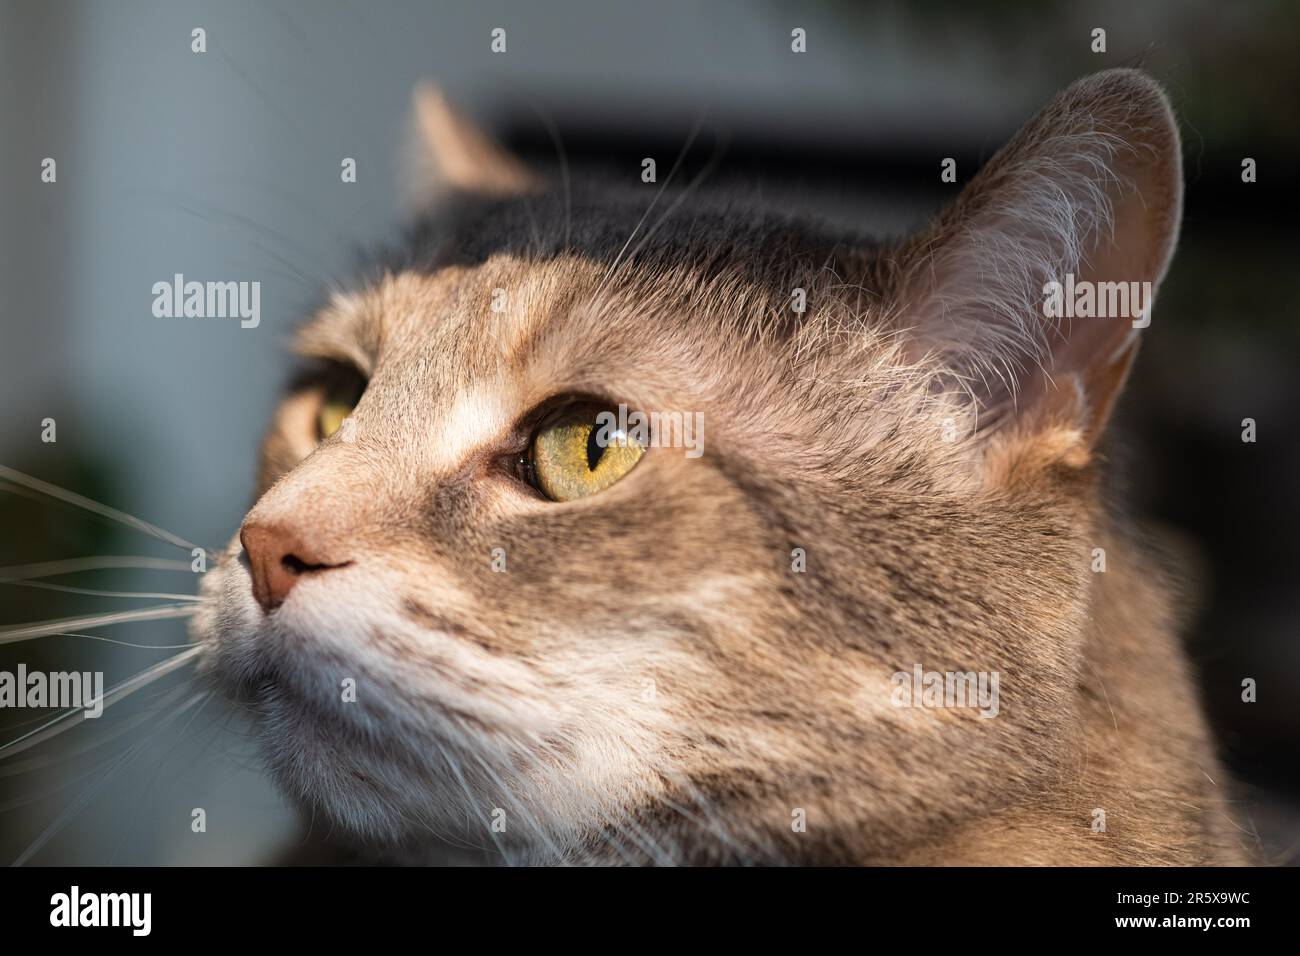 Gros plan photographie d'un chat domestique gris à tabby torbie dilué avec de longs whiskers et des yeux verts regardant sur le côté Banque D'Images